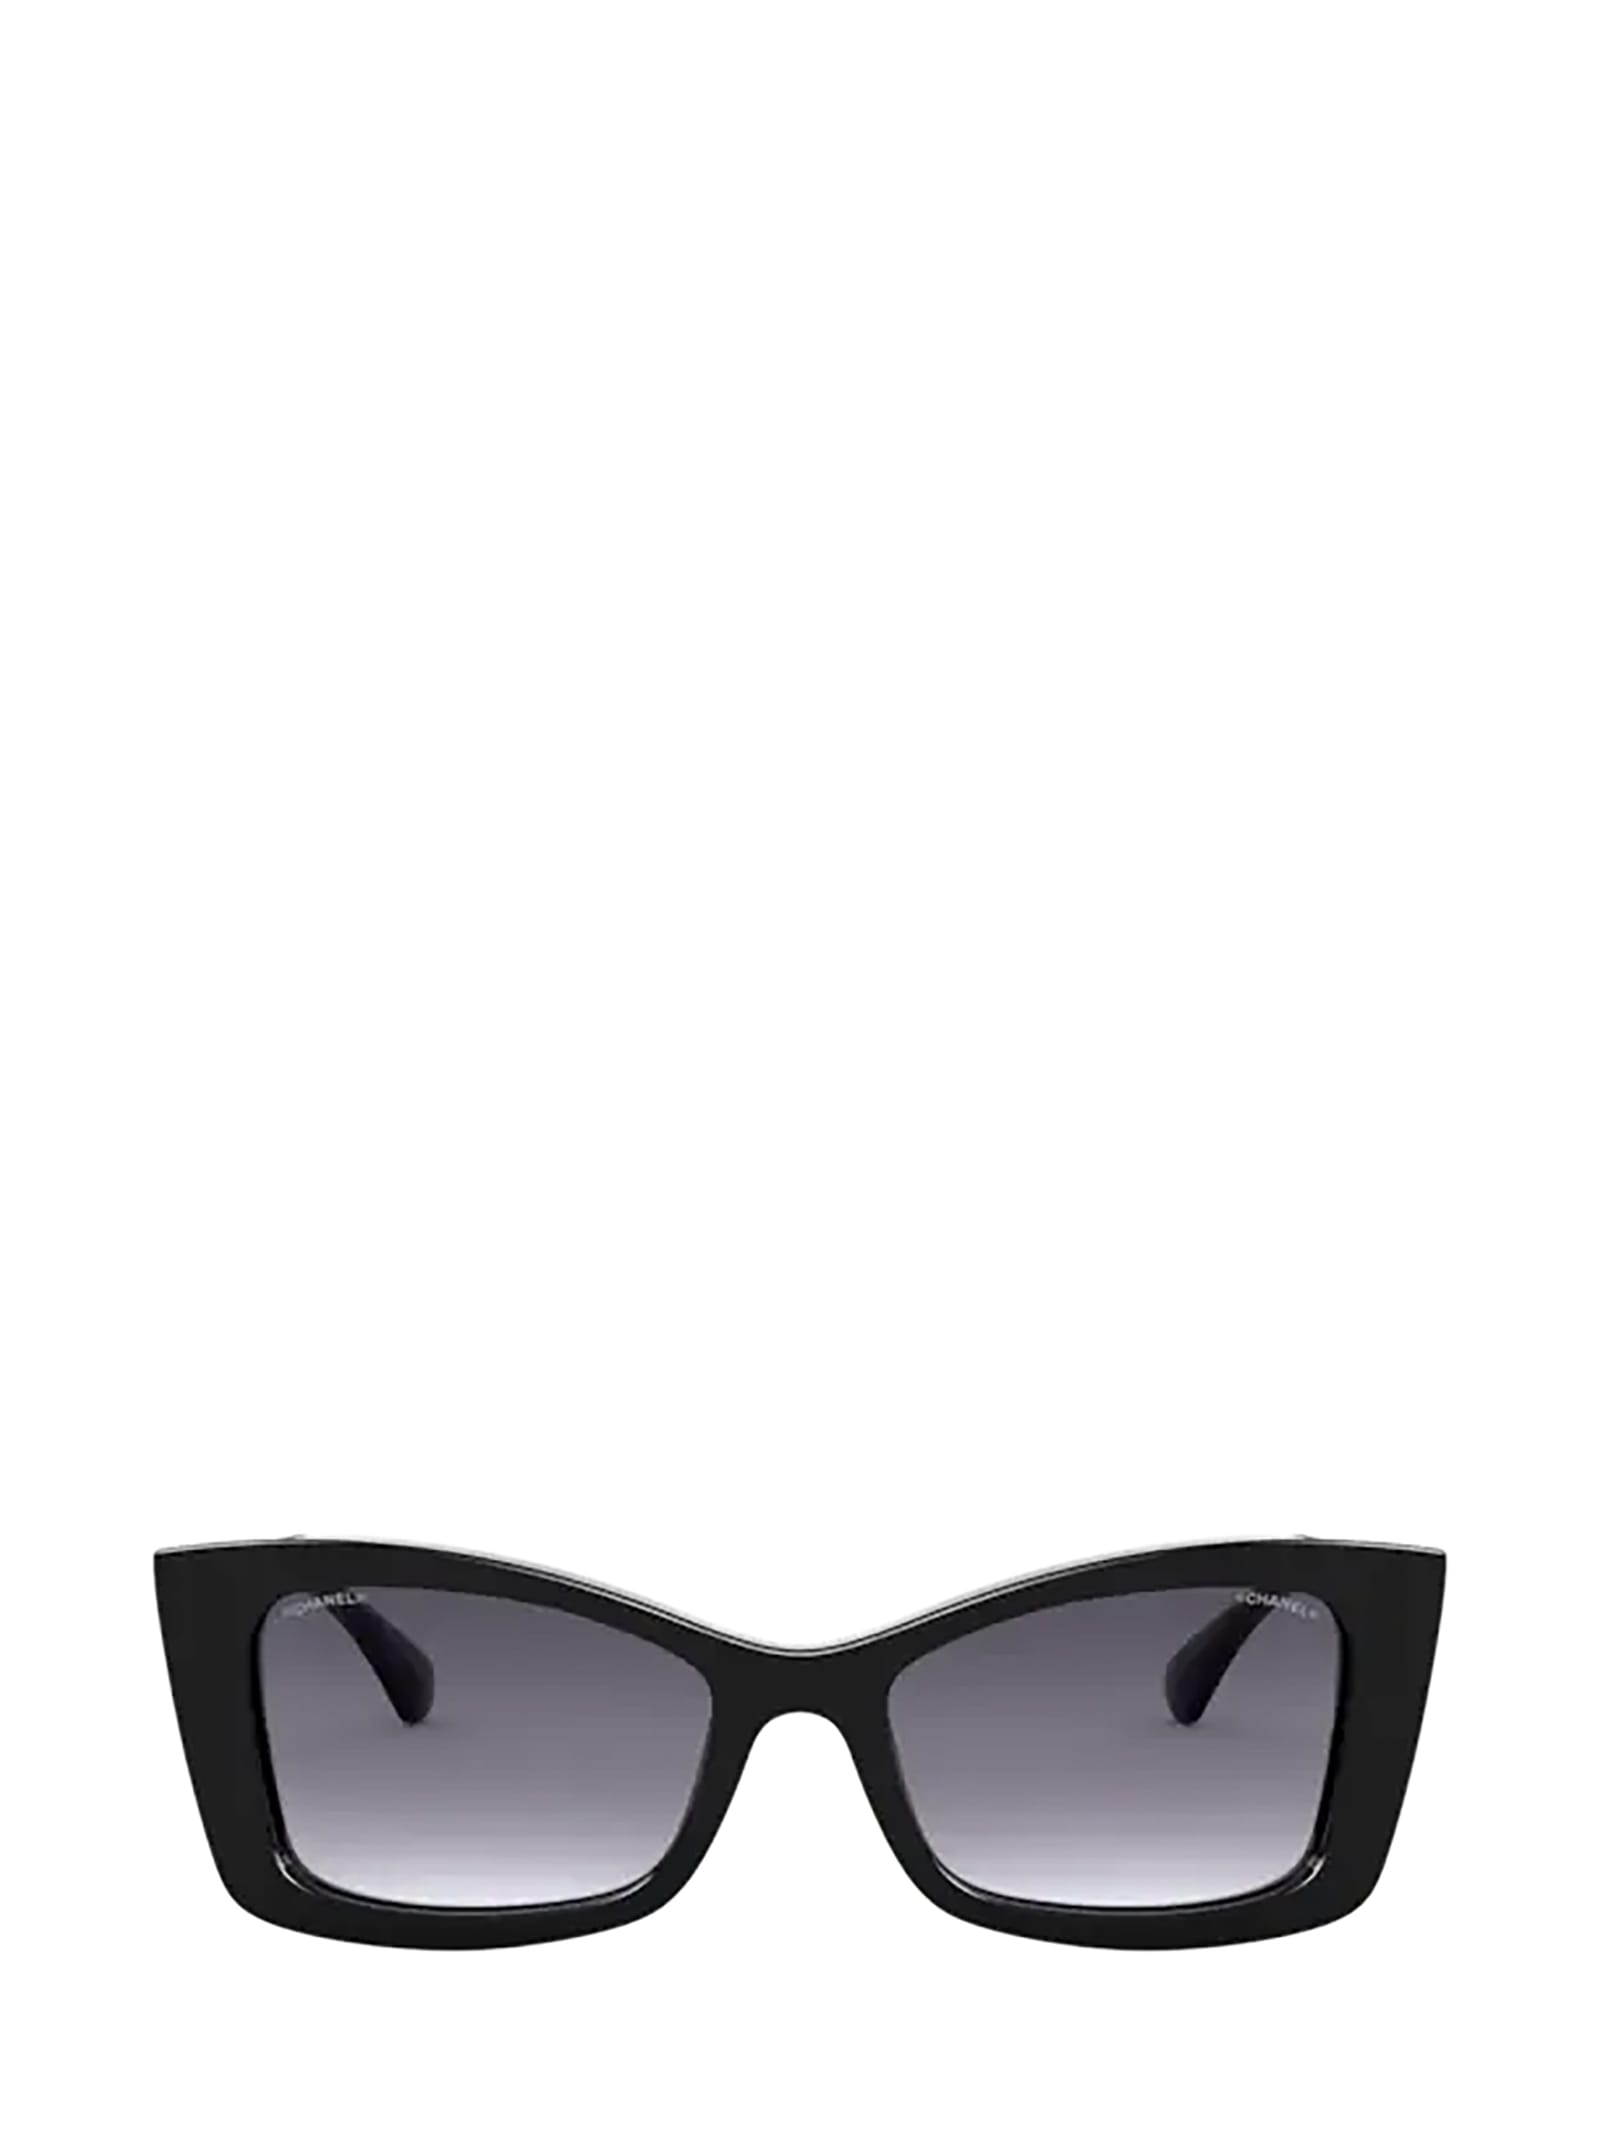 Chanel - Rectangle Sunglasses - Dark Tortoise White Gold - Chanel Eyewear -  Avvenice